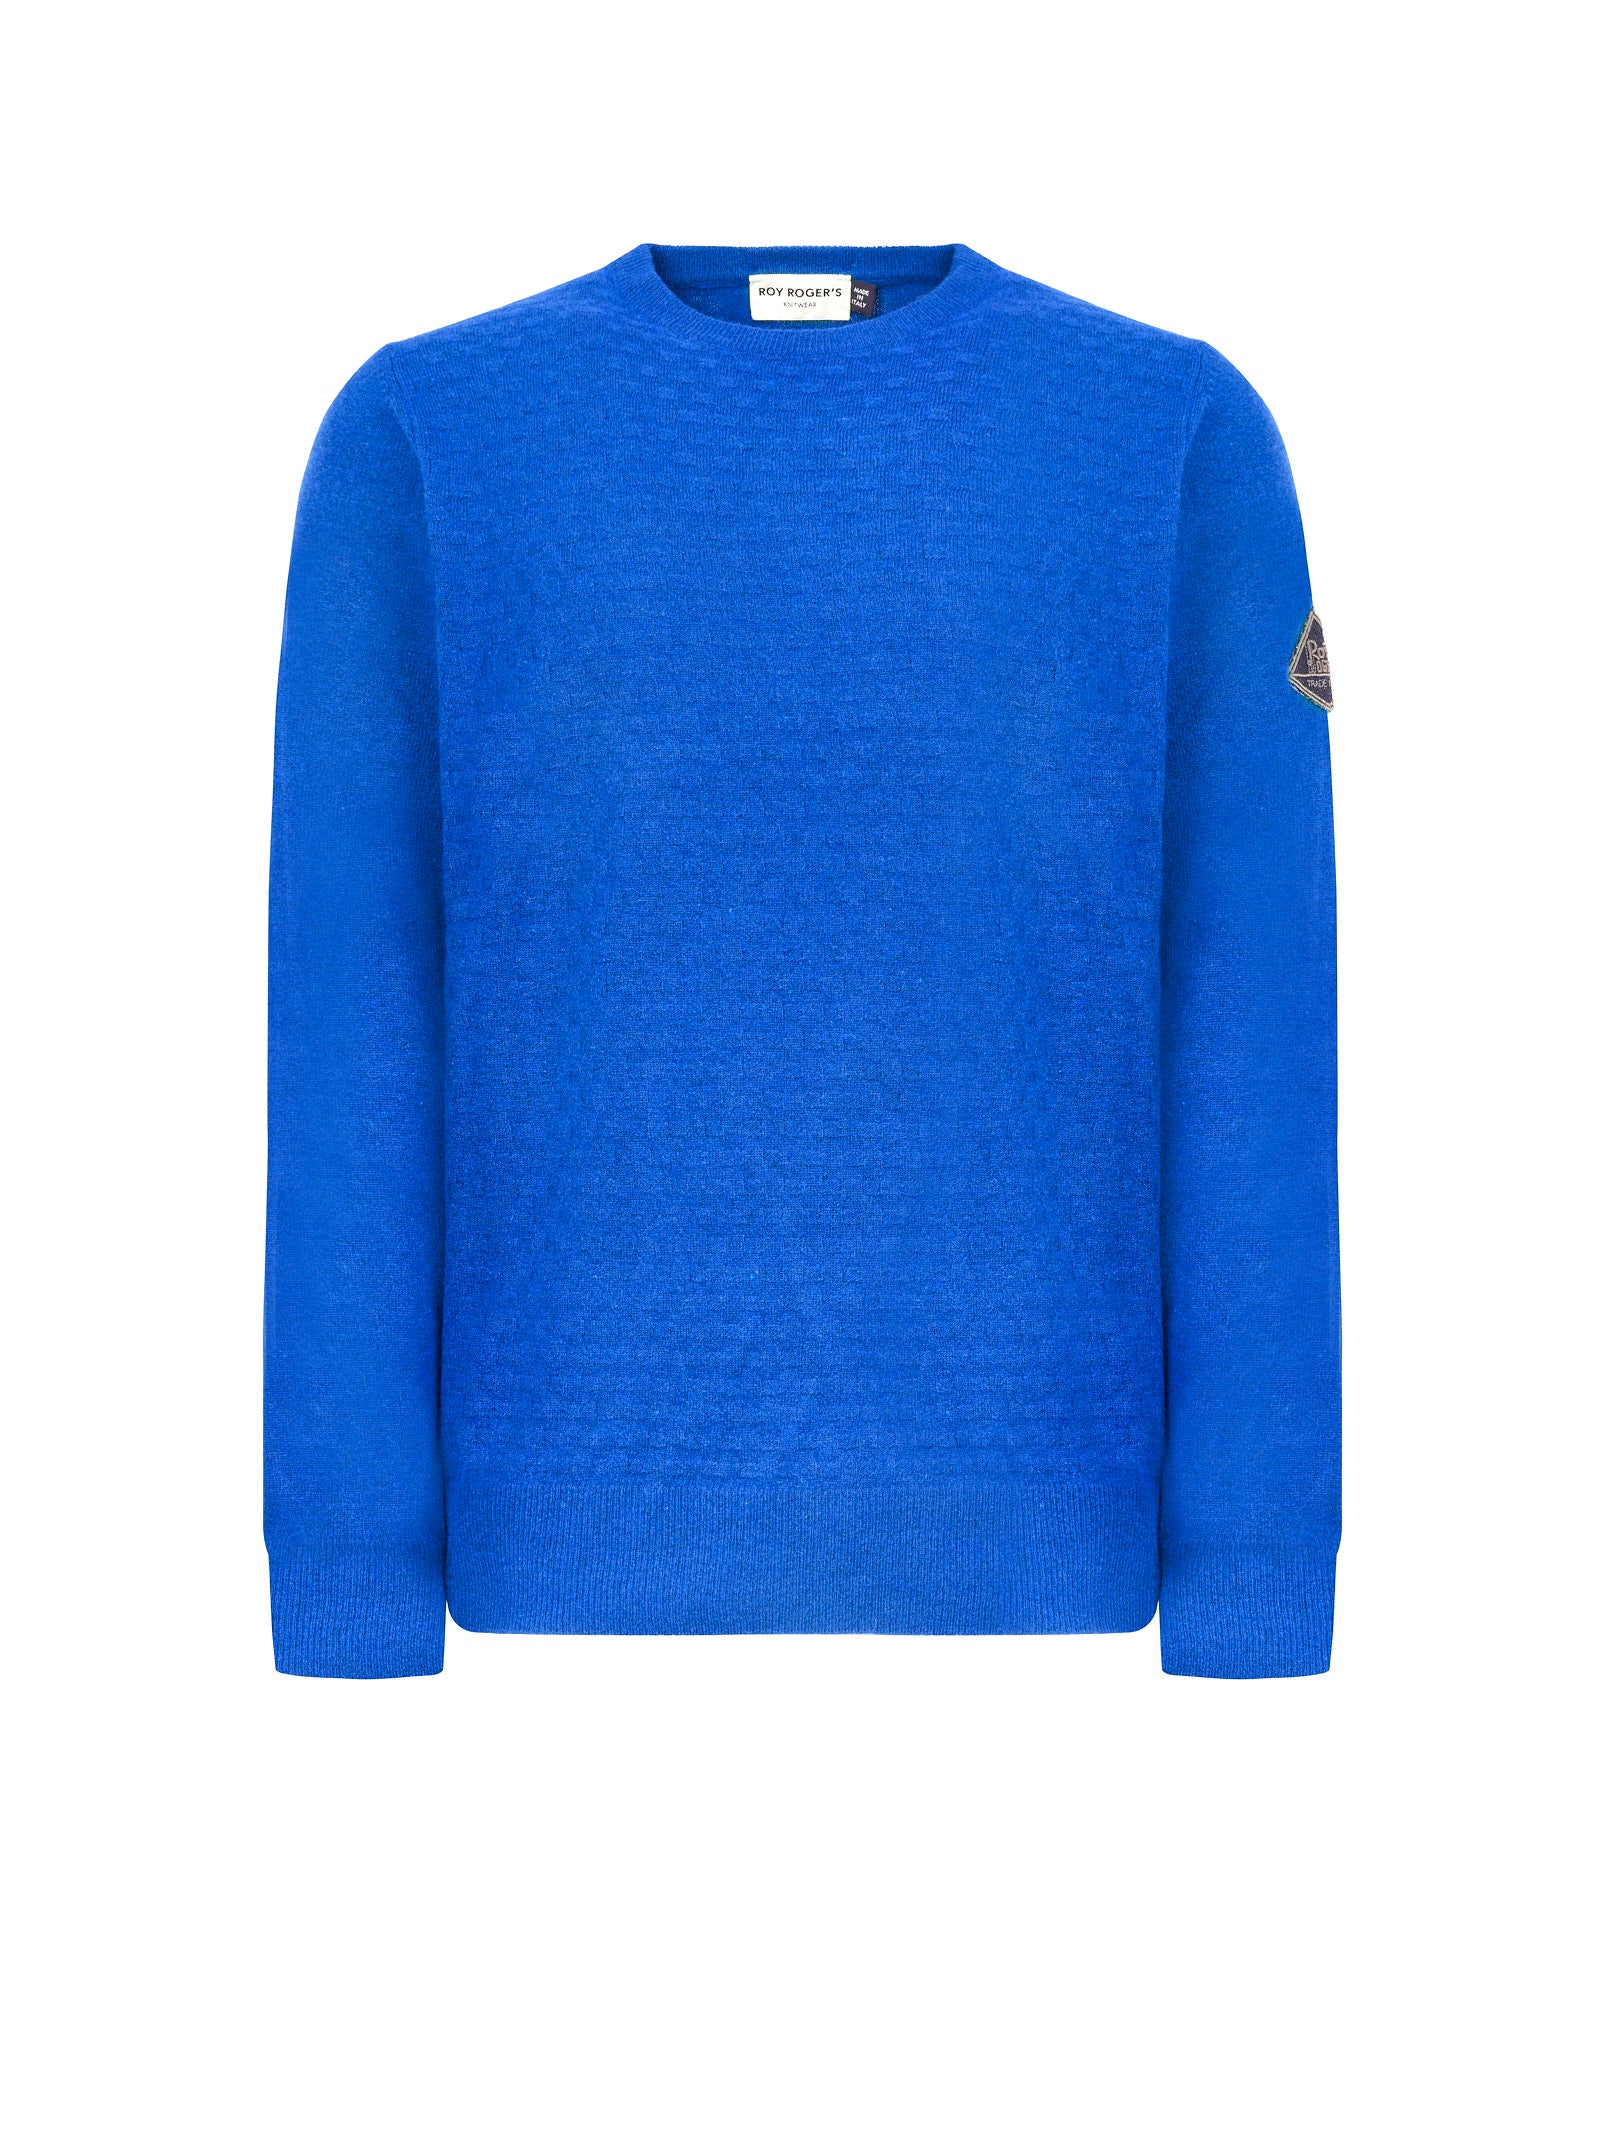 Maglia ROY ROGER'S Girocollo lana lavorata
Azzurro